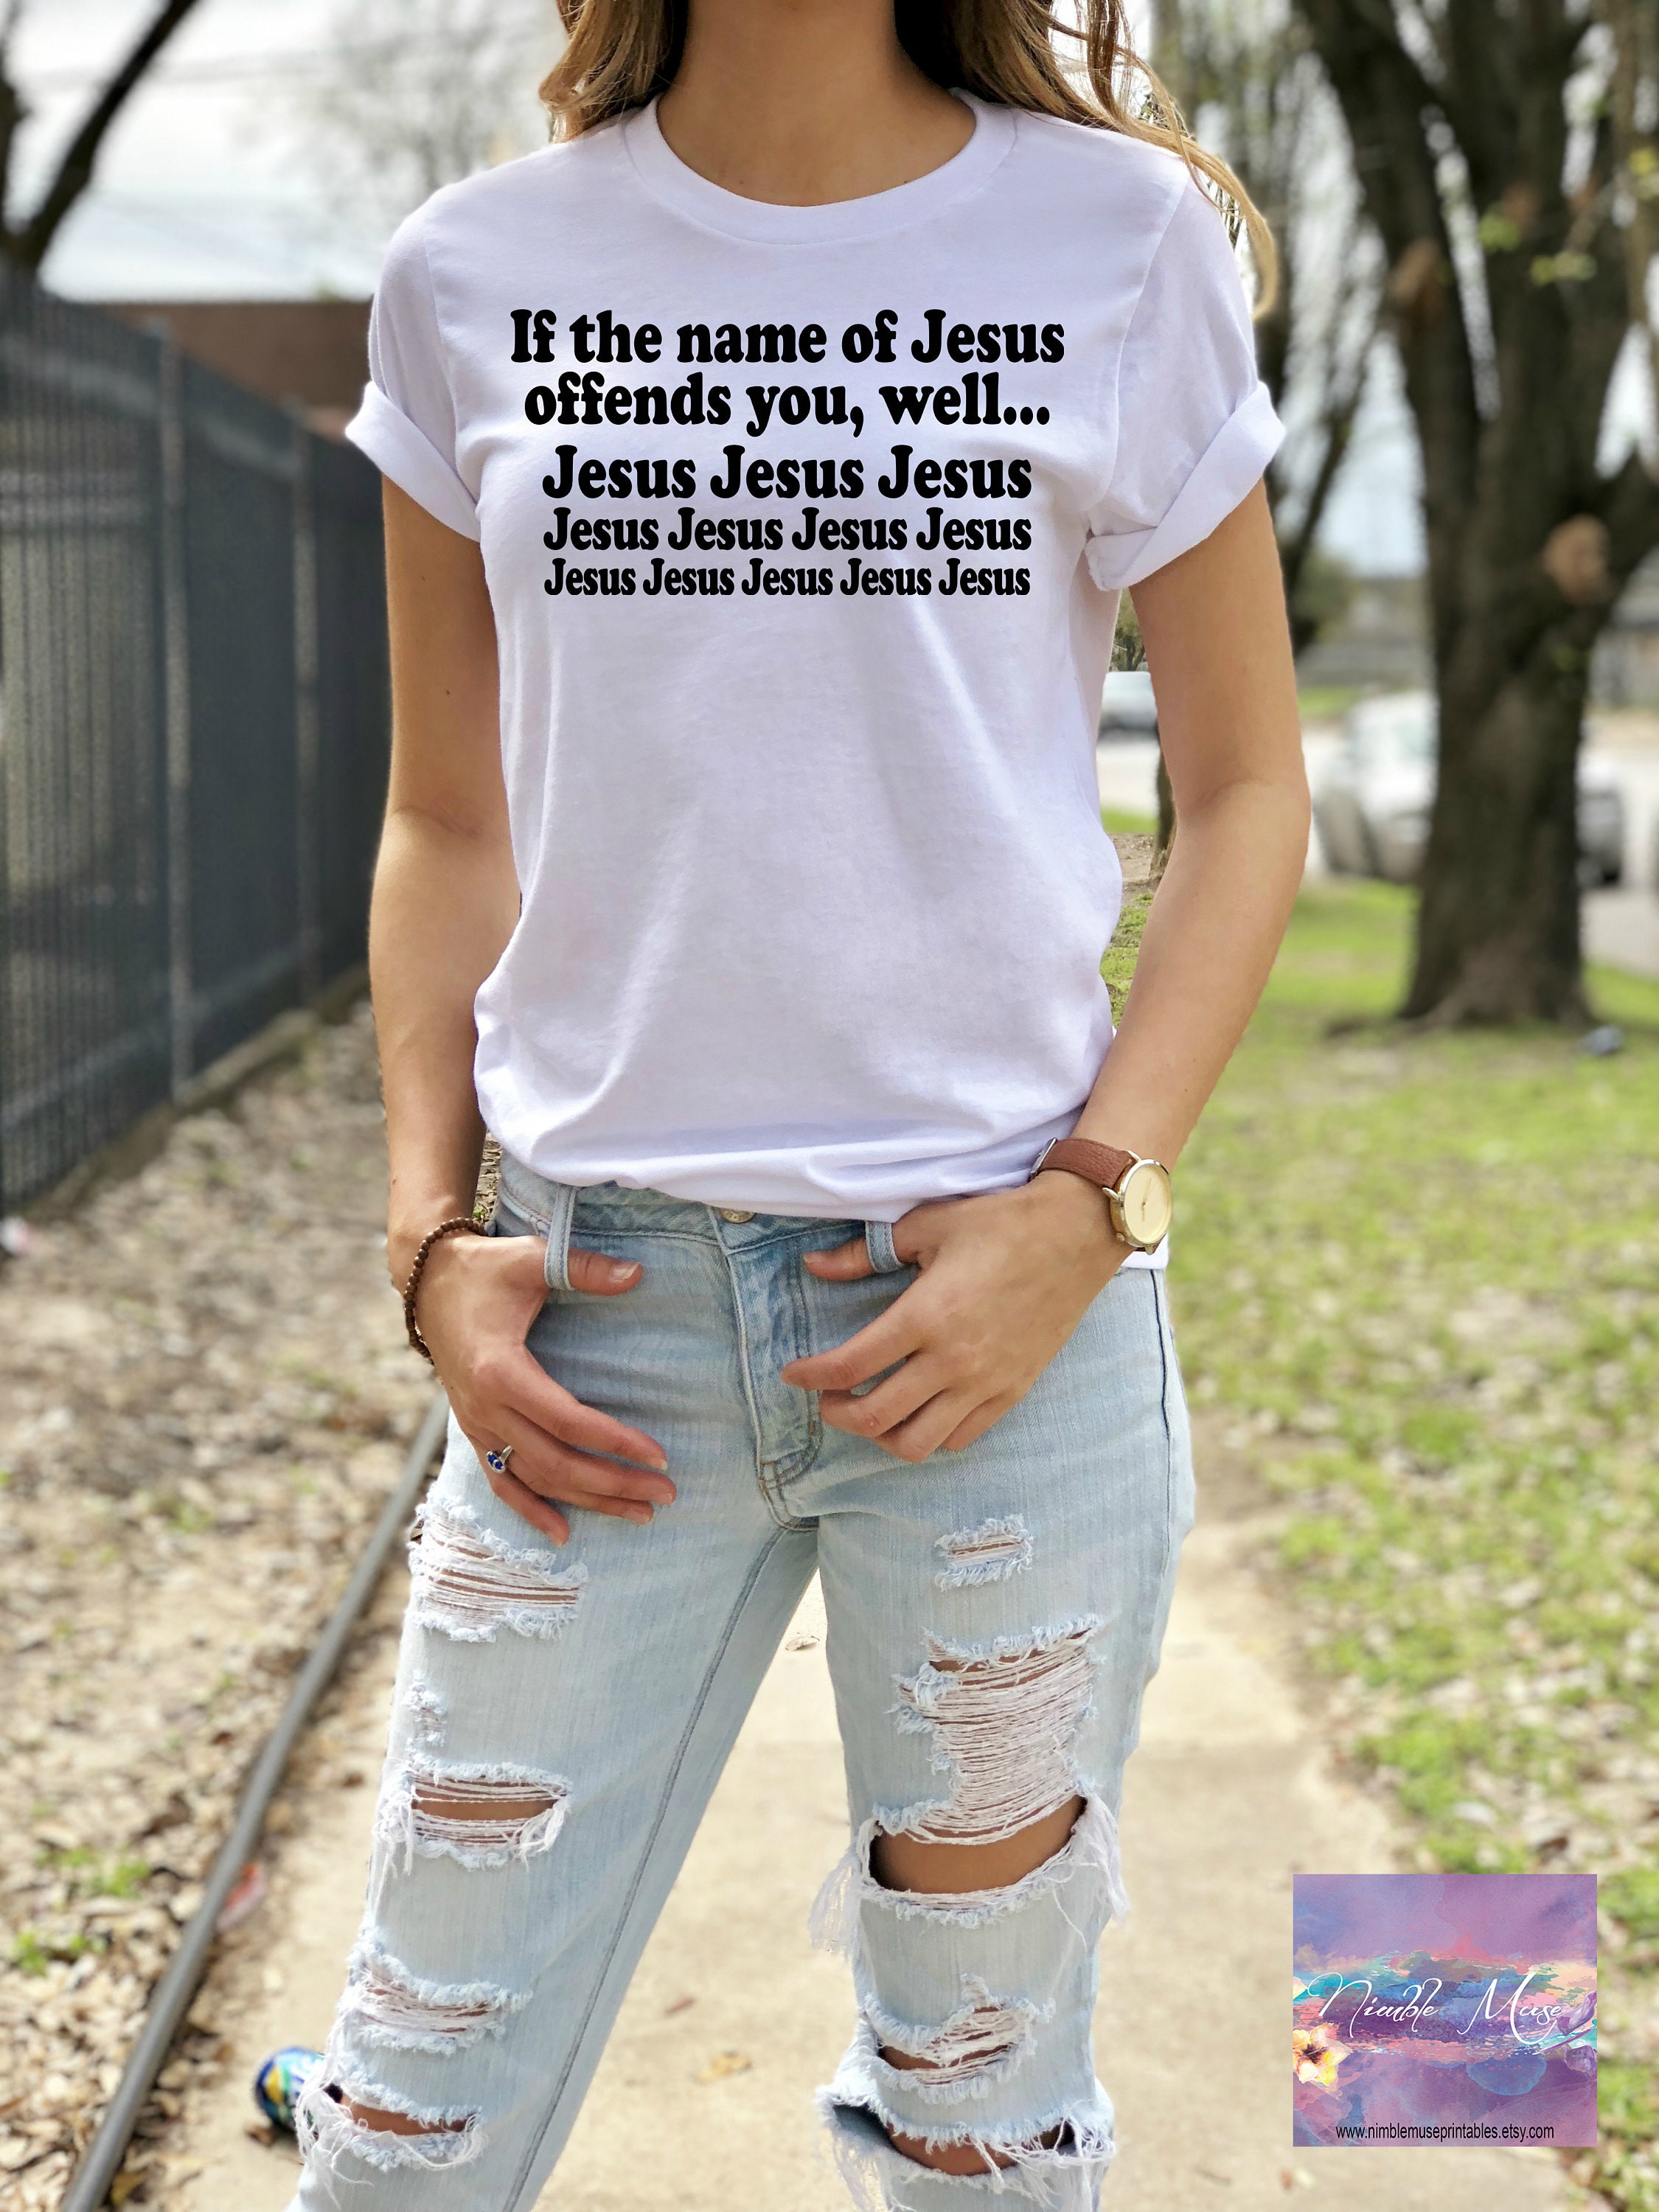 Christian Tshirt Funny Jesus Tshirt Funny Christian Tee Name Of Jesus T Shirt Jesus Tee